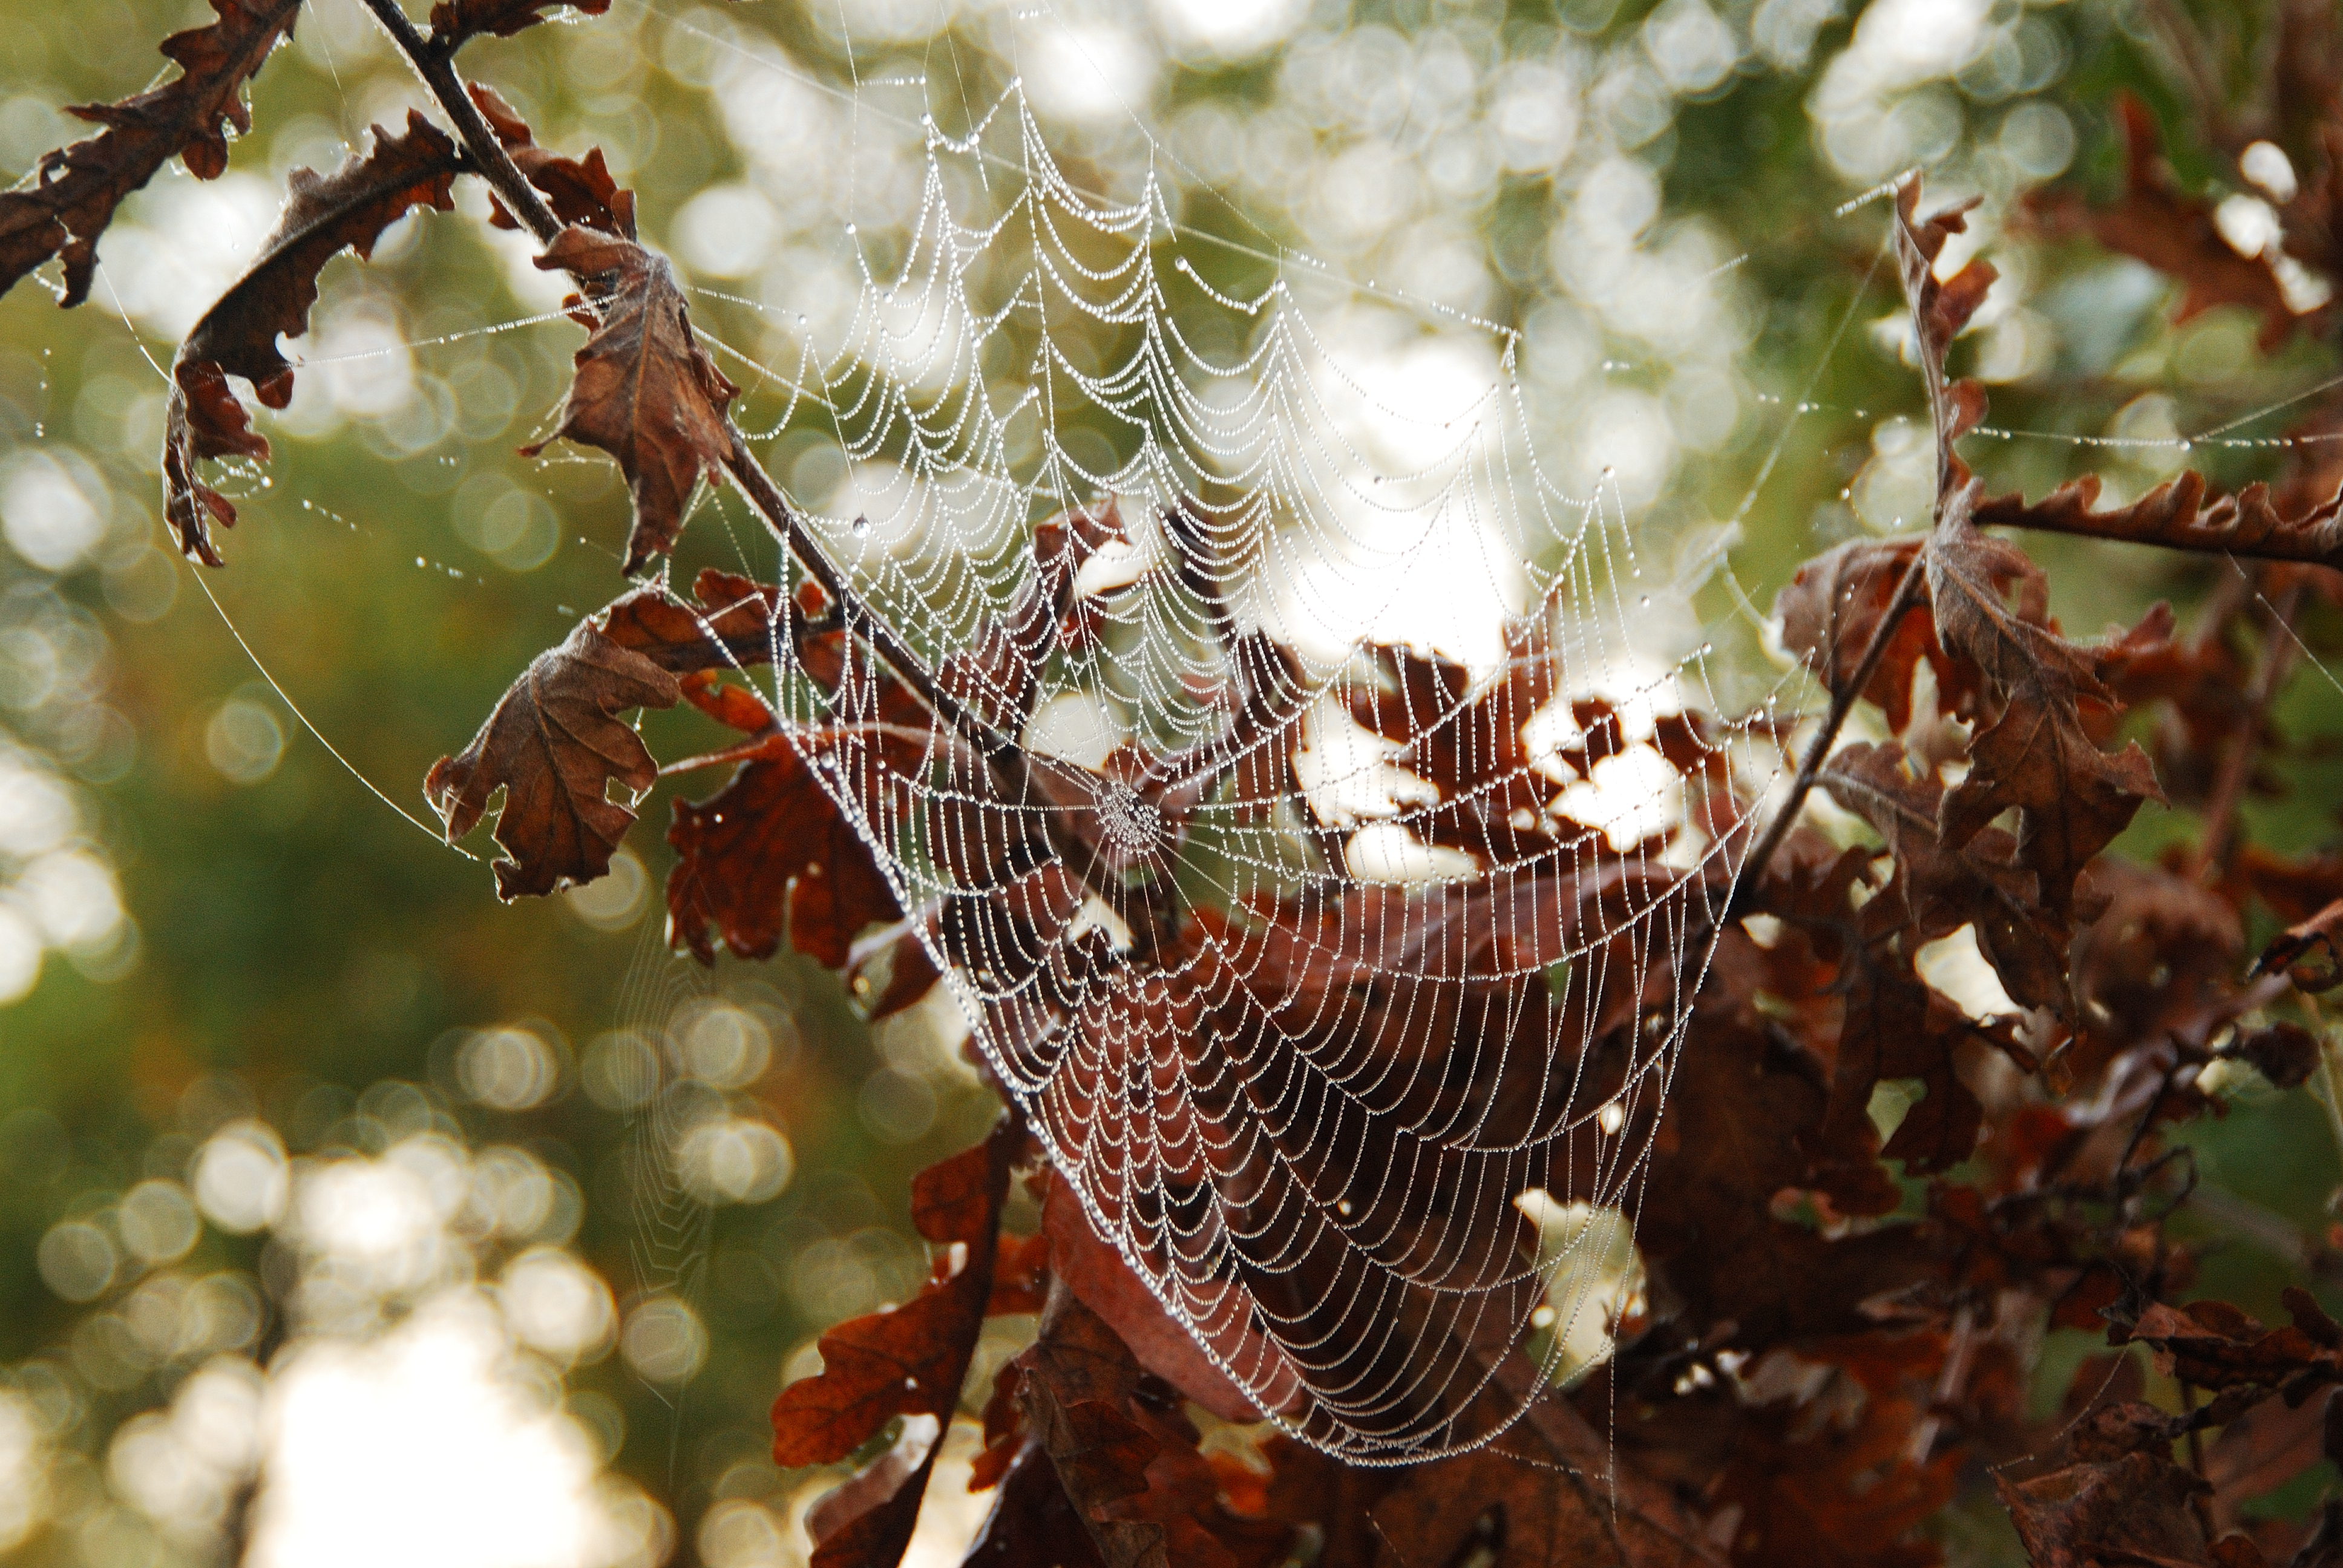 Spiderweb in Medjugorje